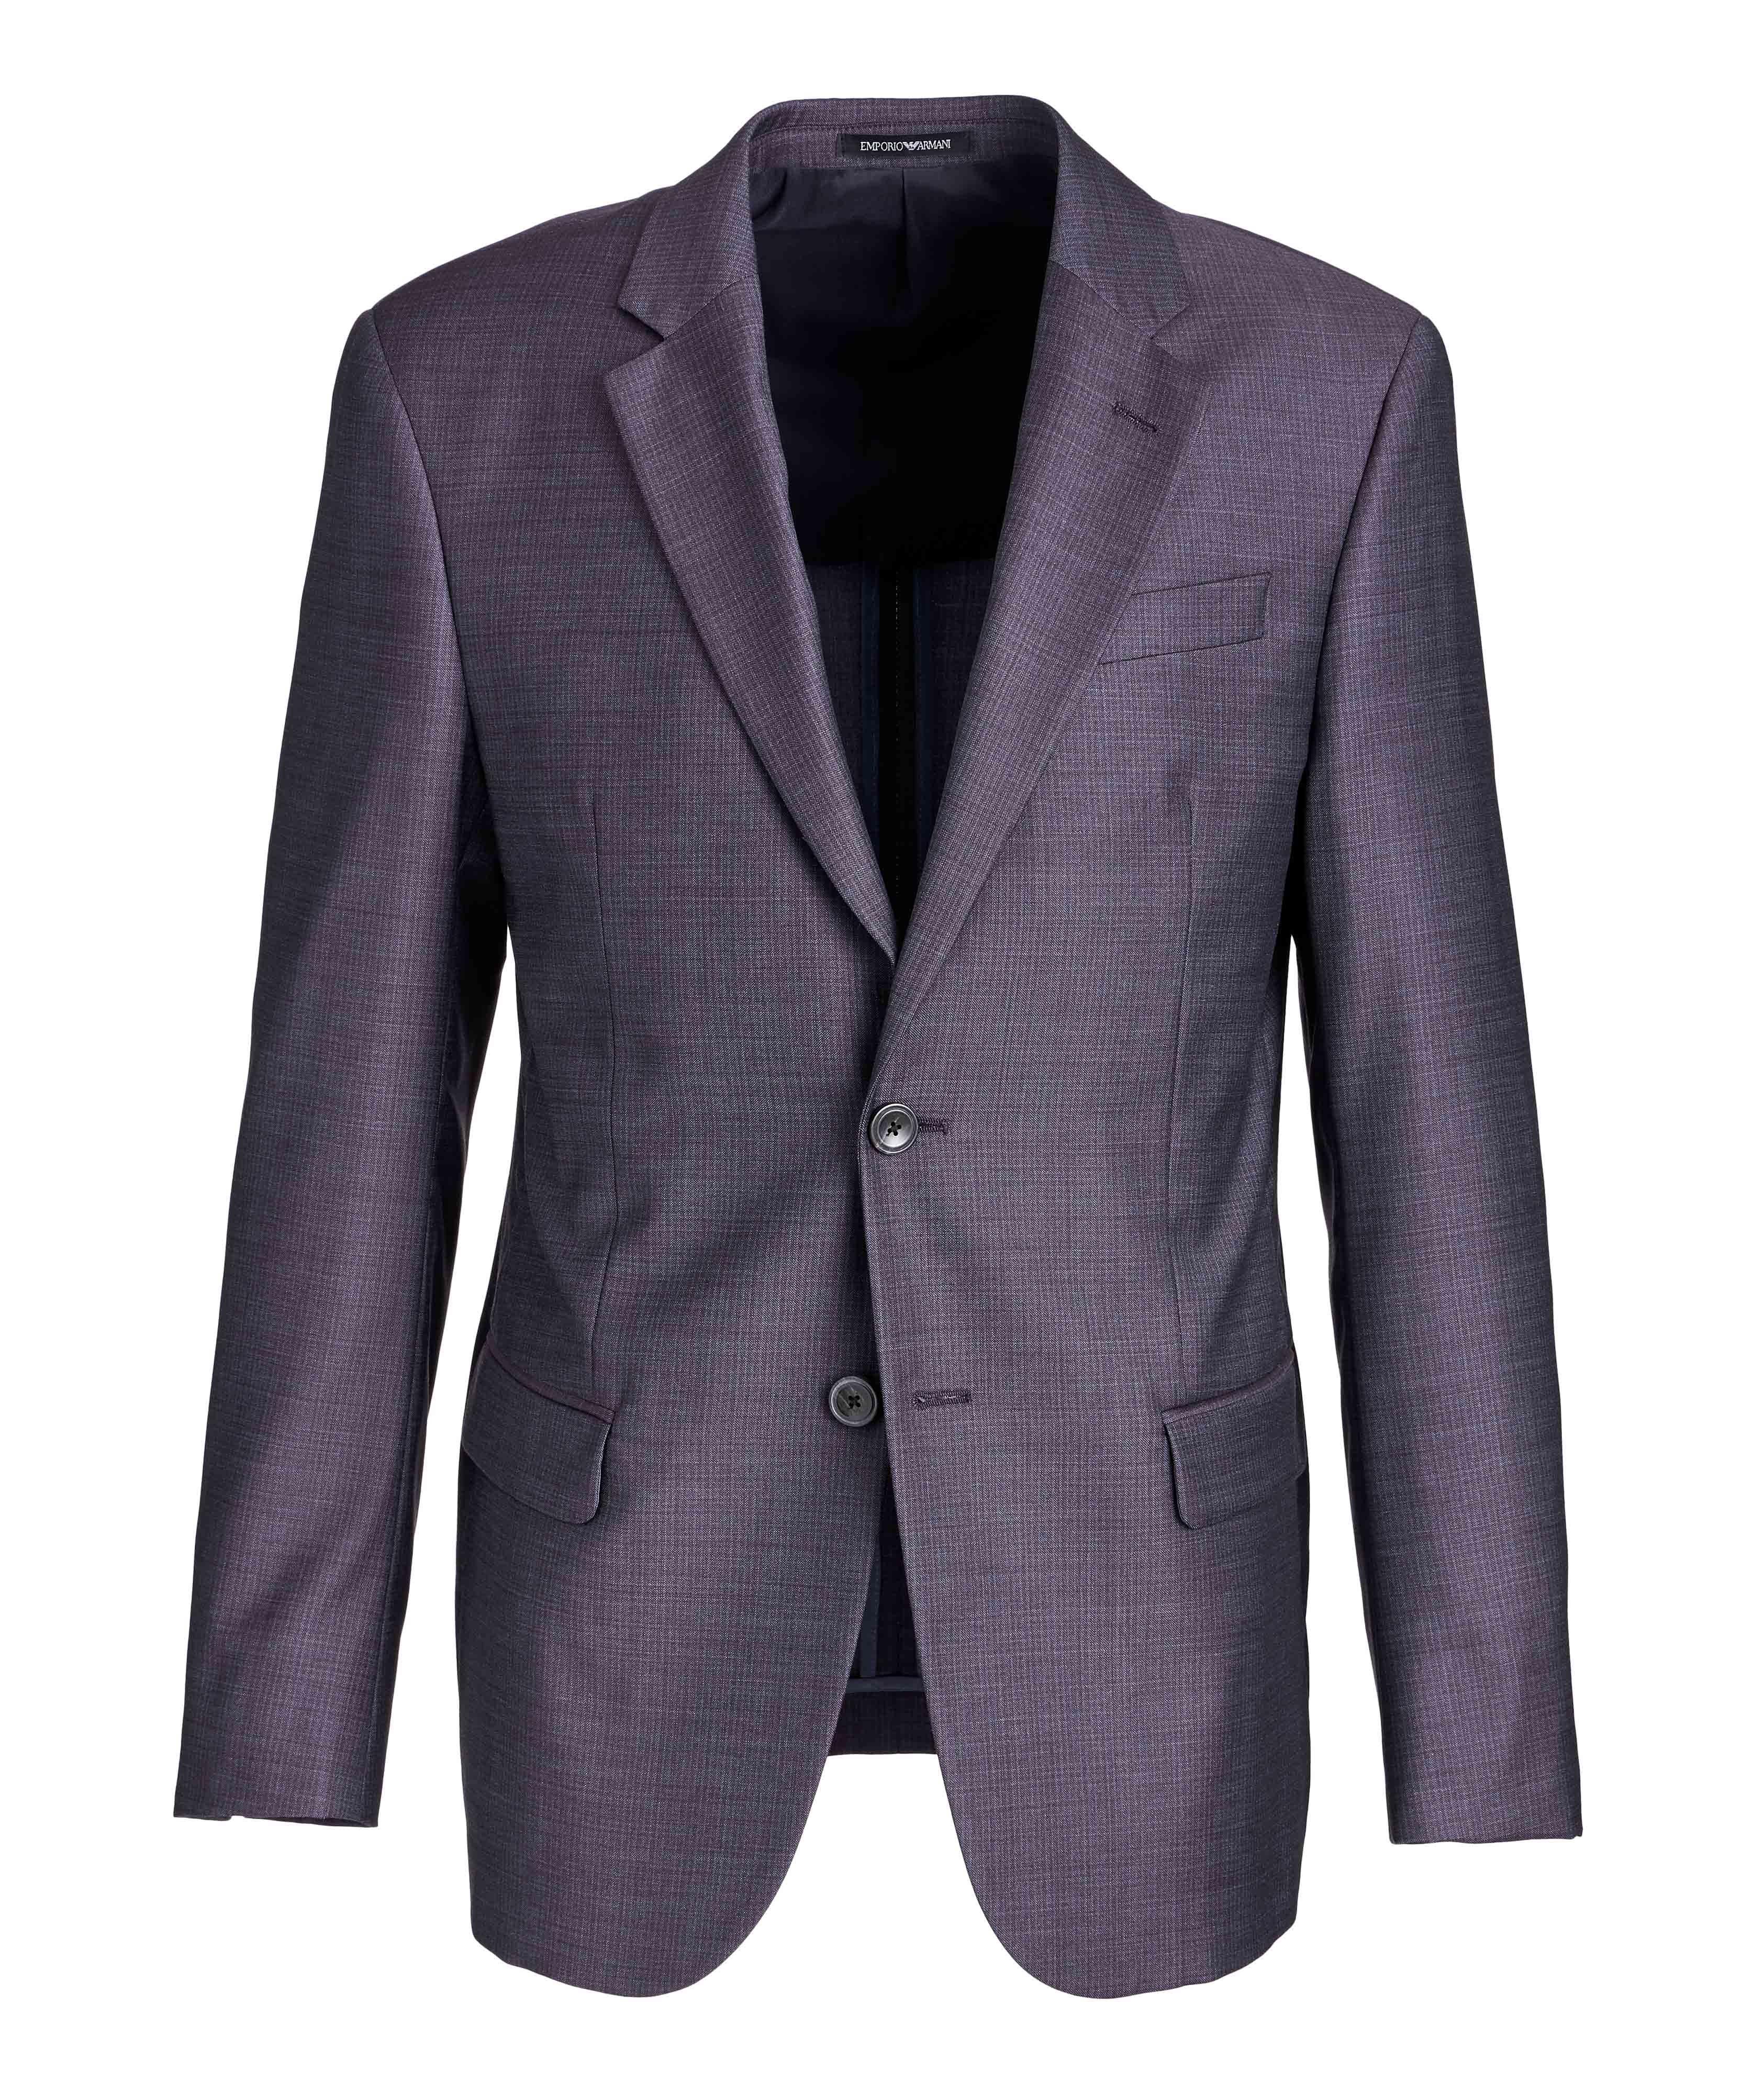 G-Line Deco Suit image 0